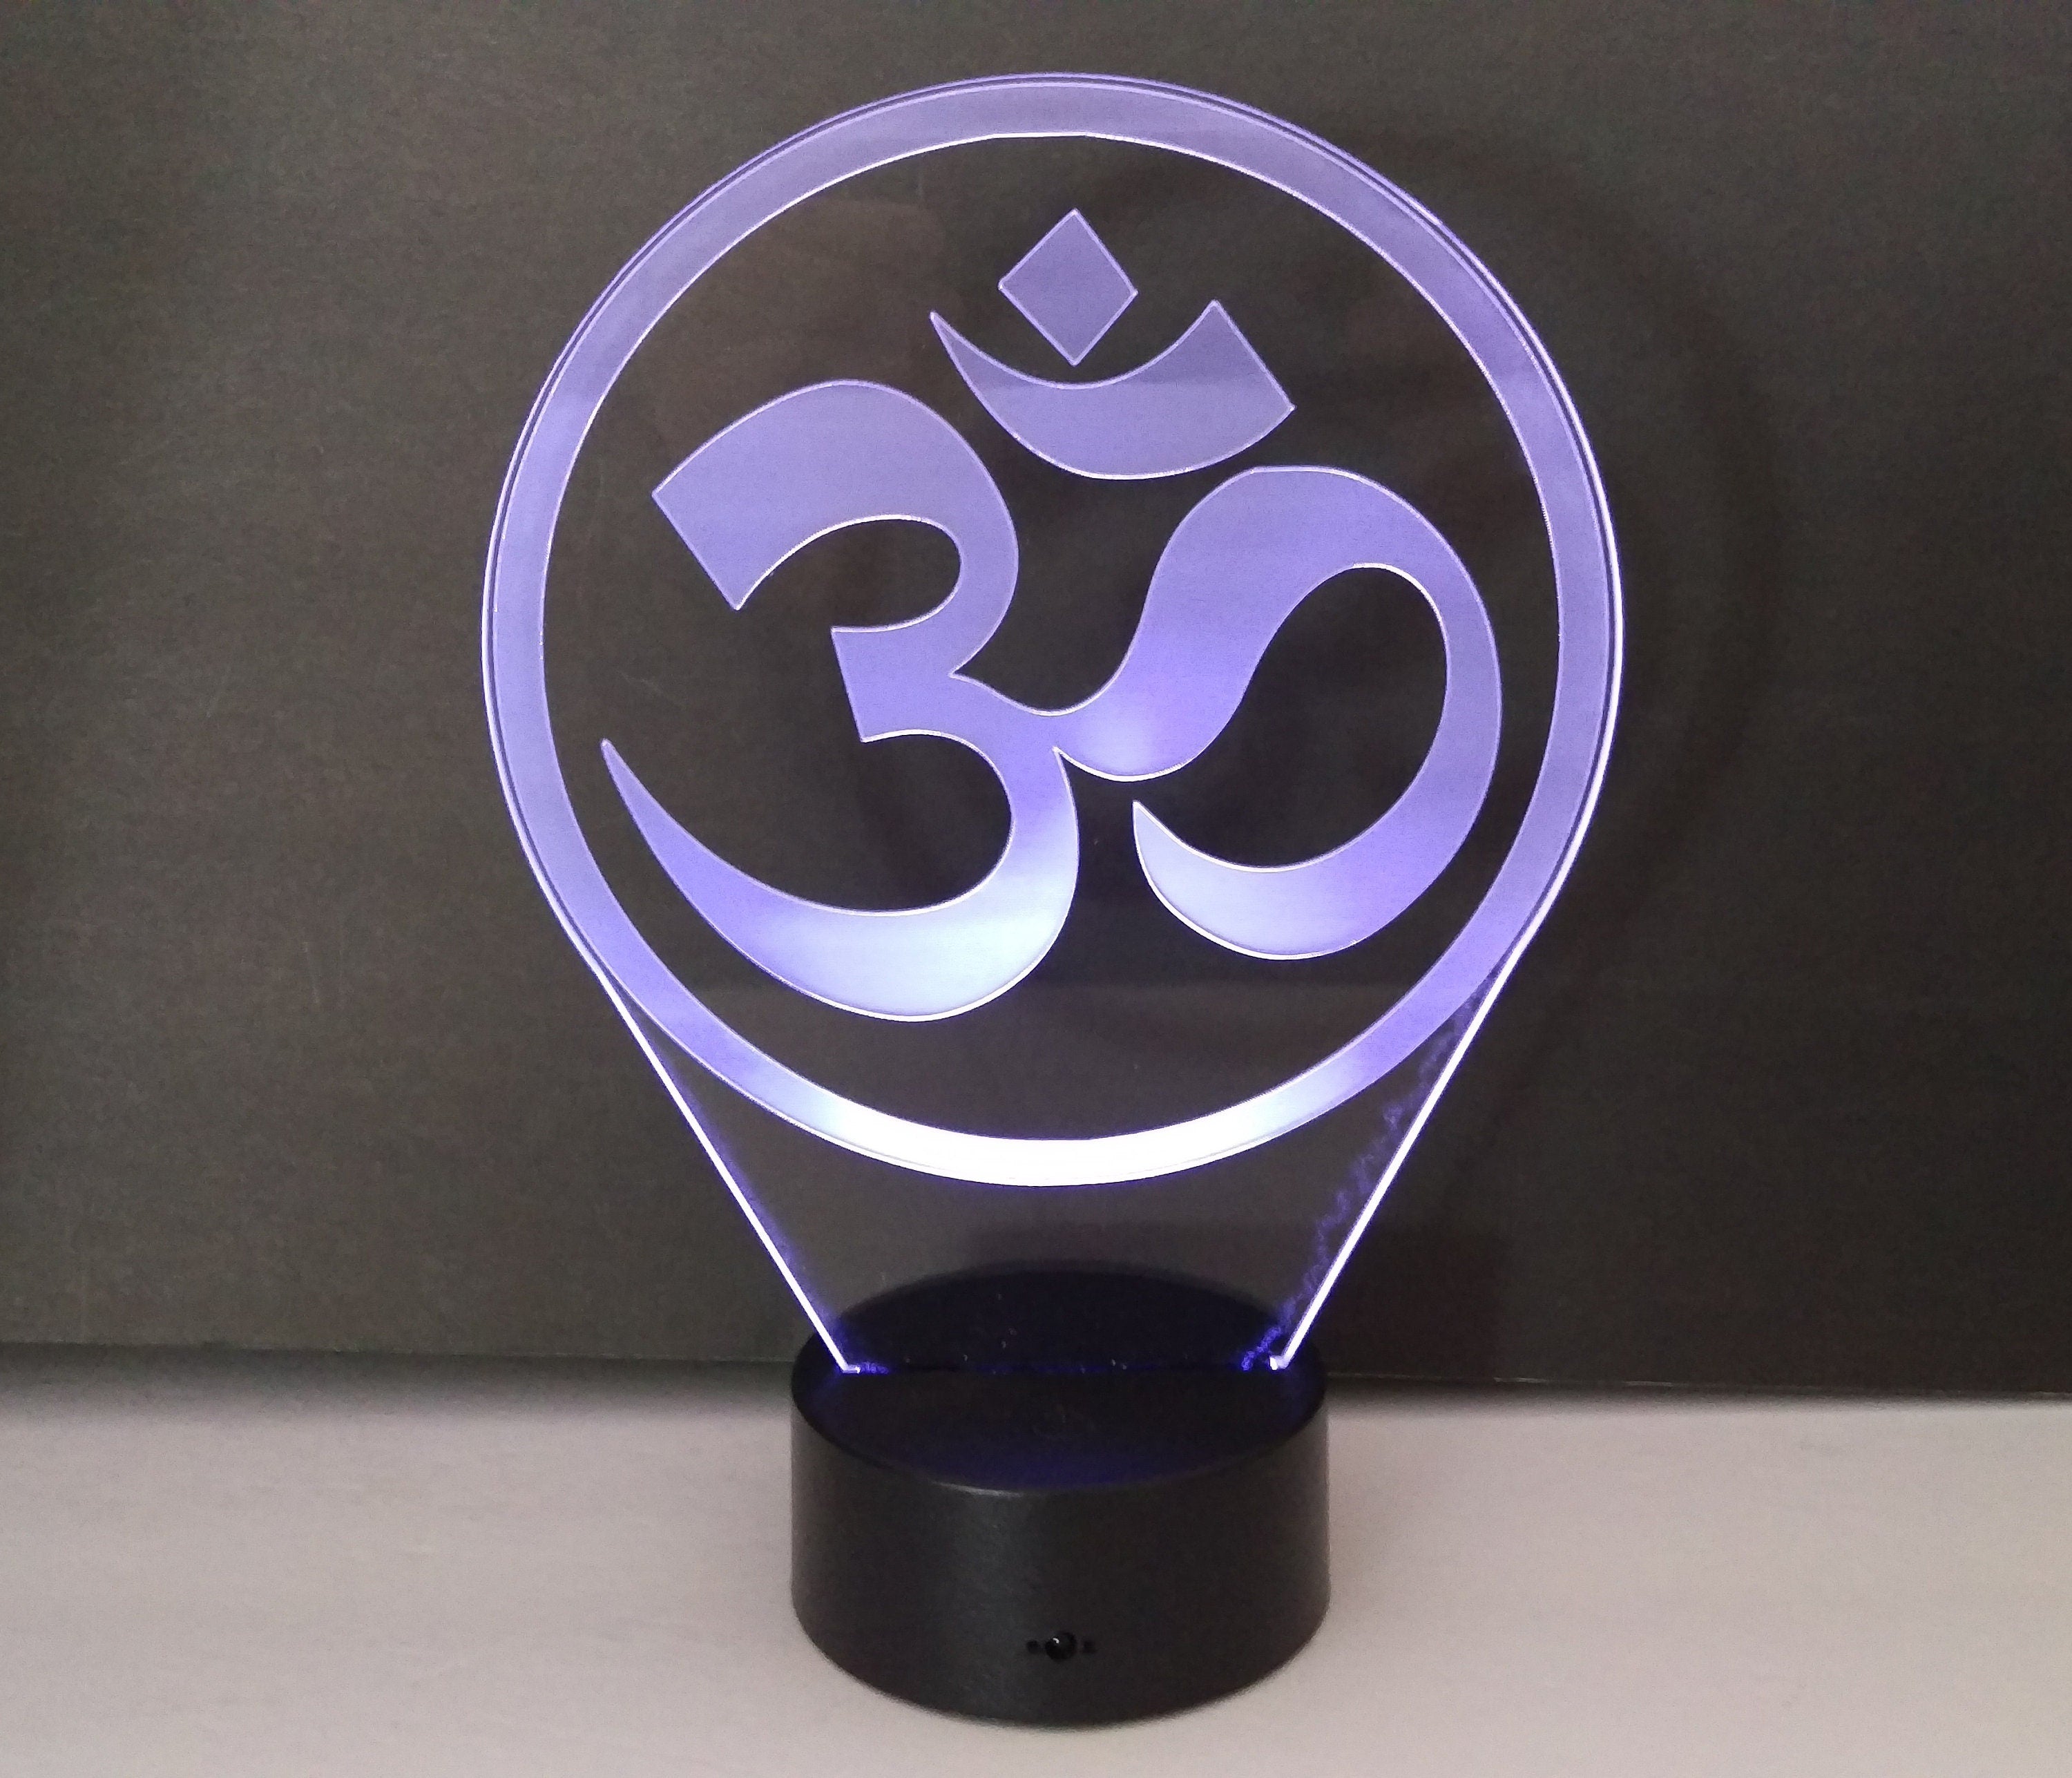 Awesome "Yoga Um" 3D LED Lamp (1155) - FREE SHIPPING!